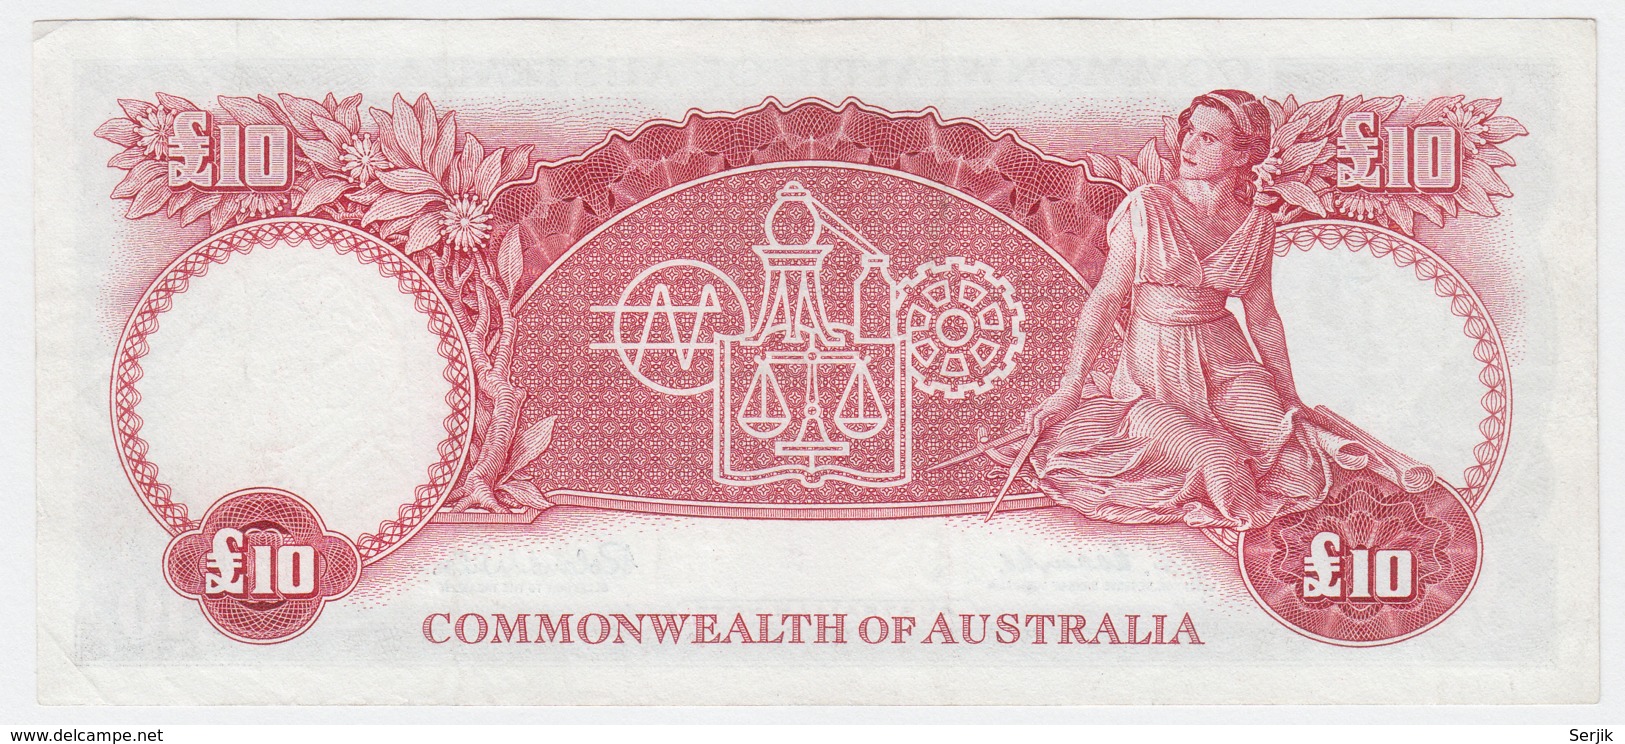 Australia 10 Pounds 1960 - 1965 VF+ Pick 36 - 1960-65 Reserve Bank Of Australia